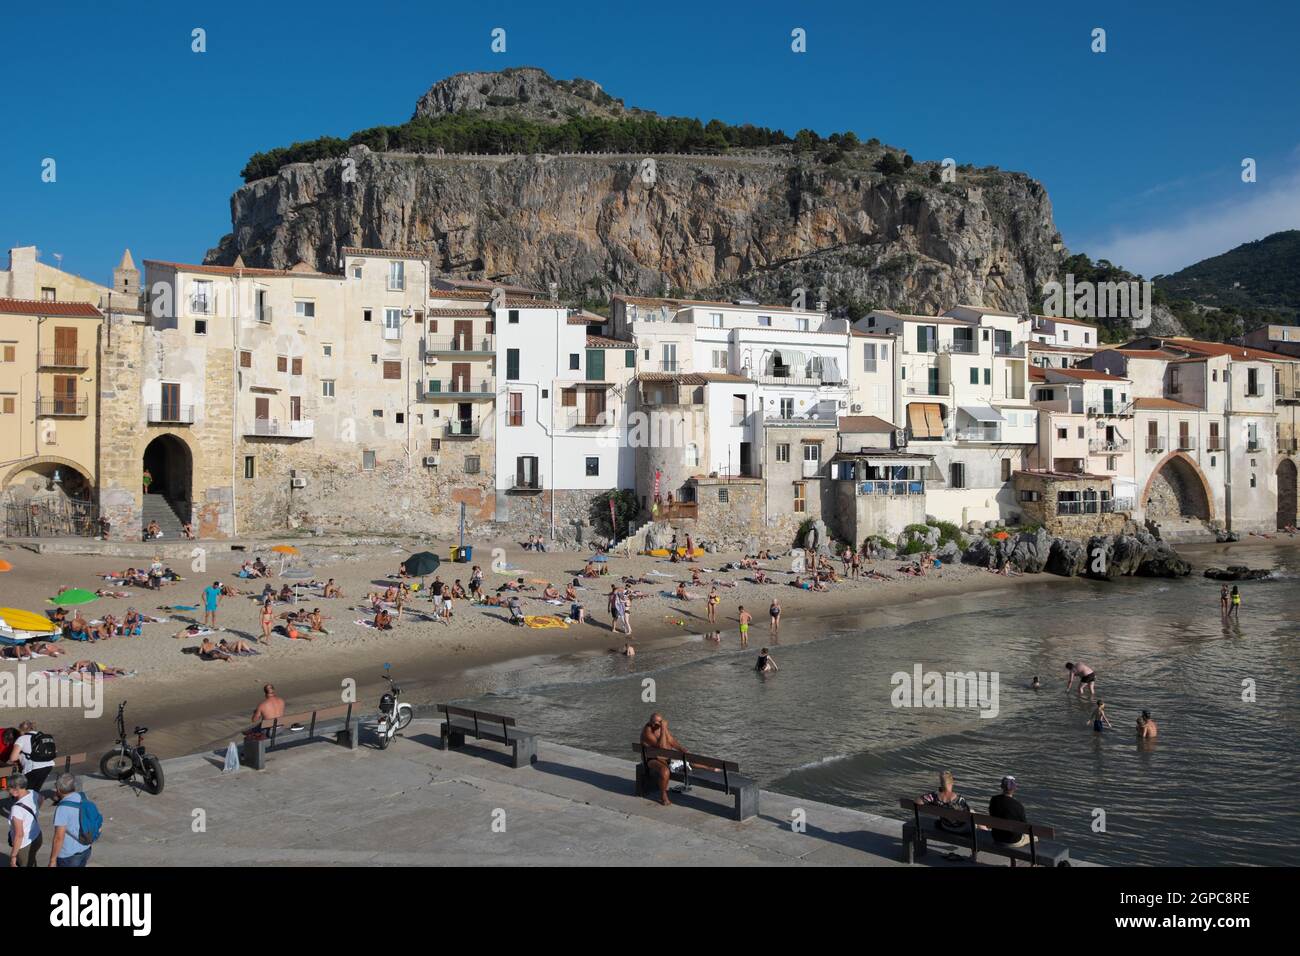 Natura e architettura in Sicilia veduta del villaggio marittimo di Cefalù sotto la Rocca fortificata (Palermo) Foto Stock